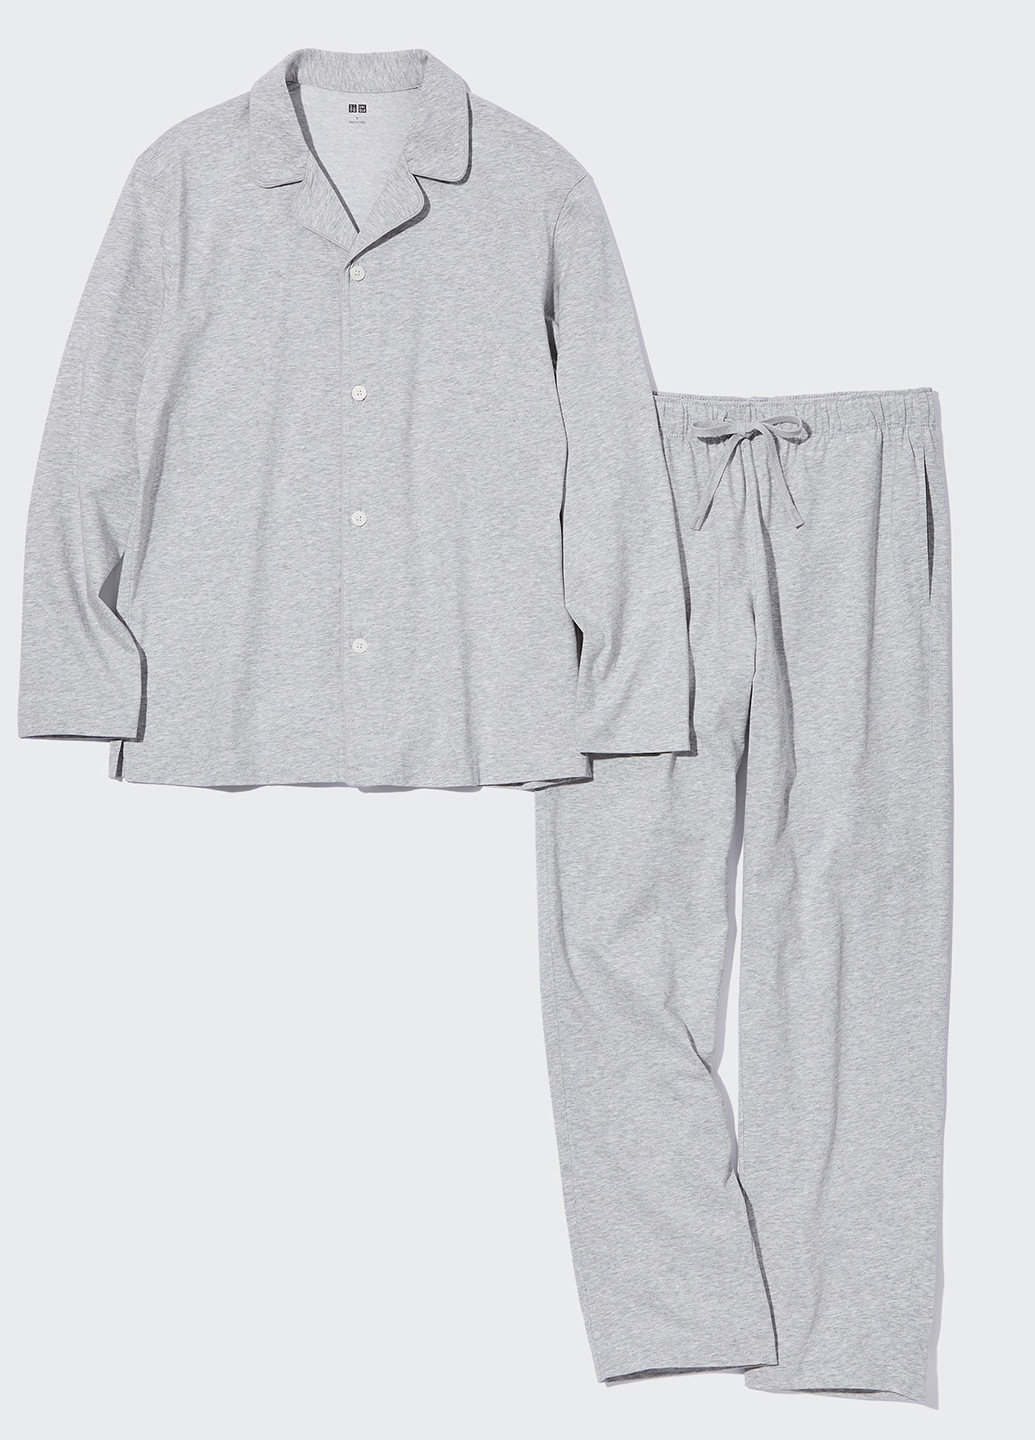 Пижама (рубашка, брюки) Uniqlo рубашка + брюки меланж серая домашняя трикотаж, хлопок